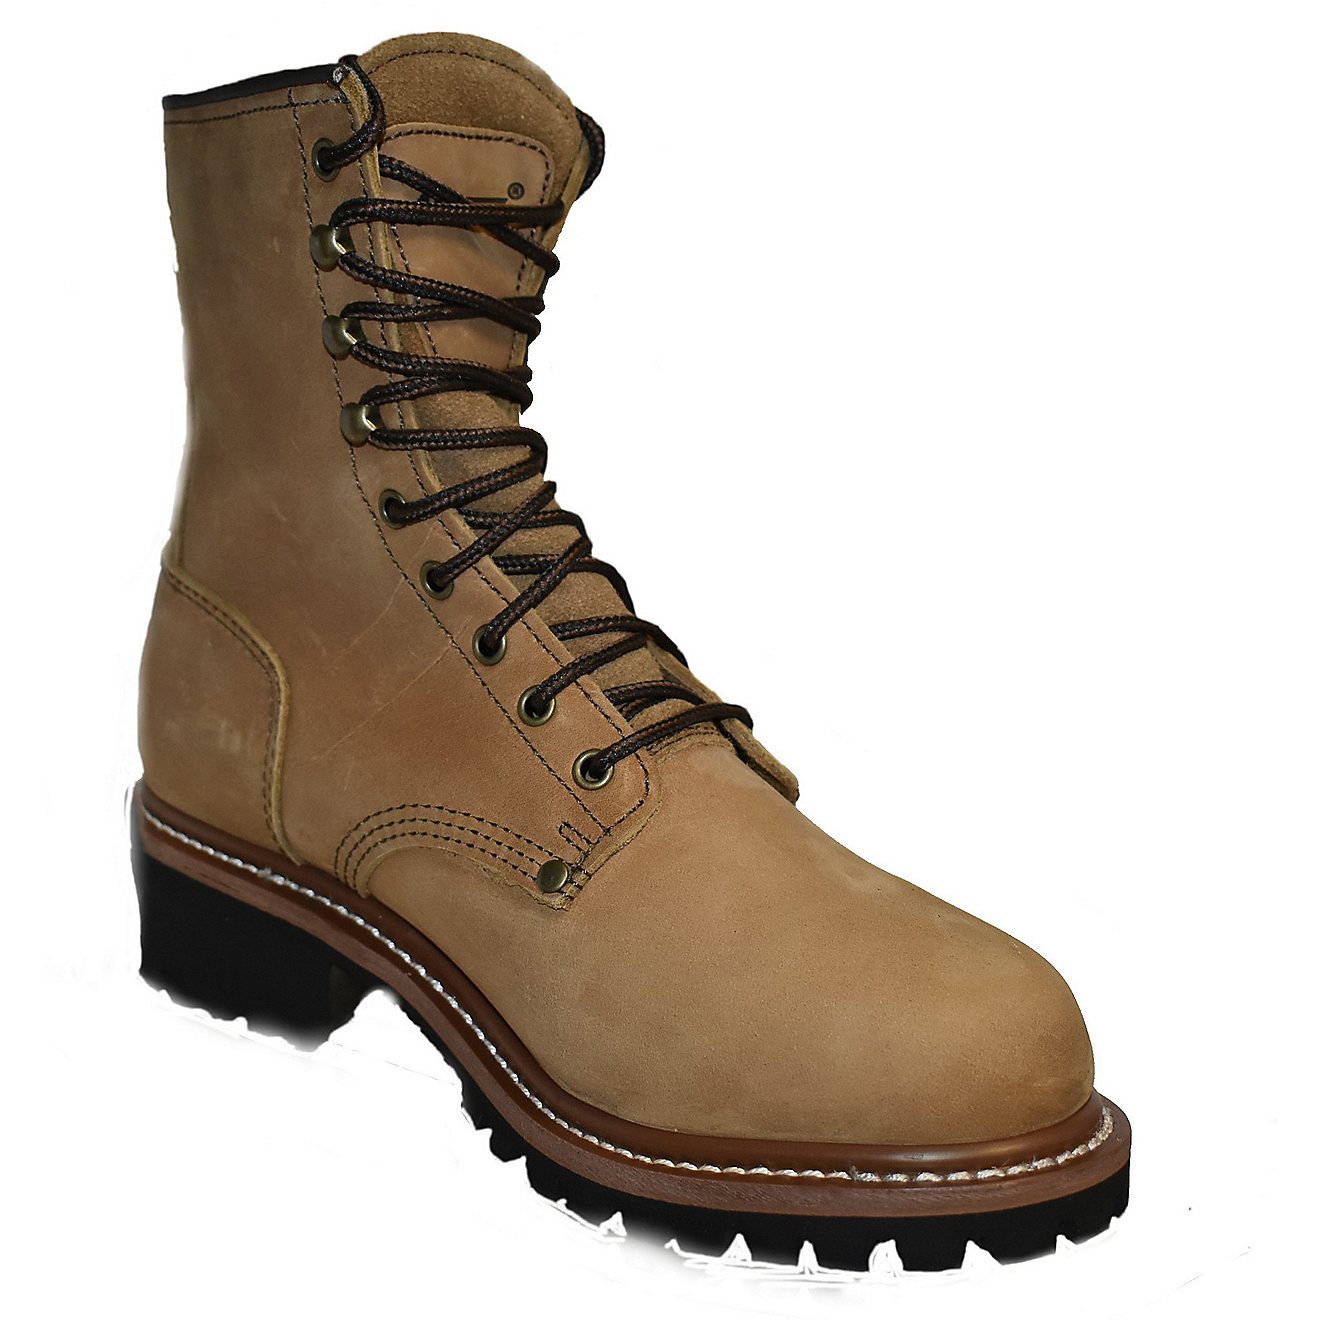 AdTec Men’s 9 in Waterproof Logger Work Boots                                                                                  - view number 2